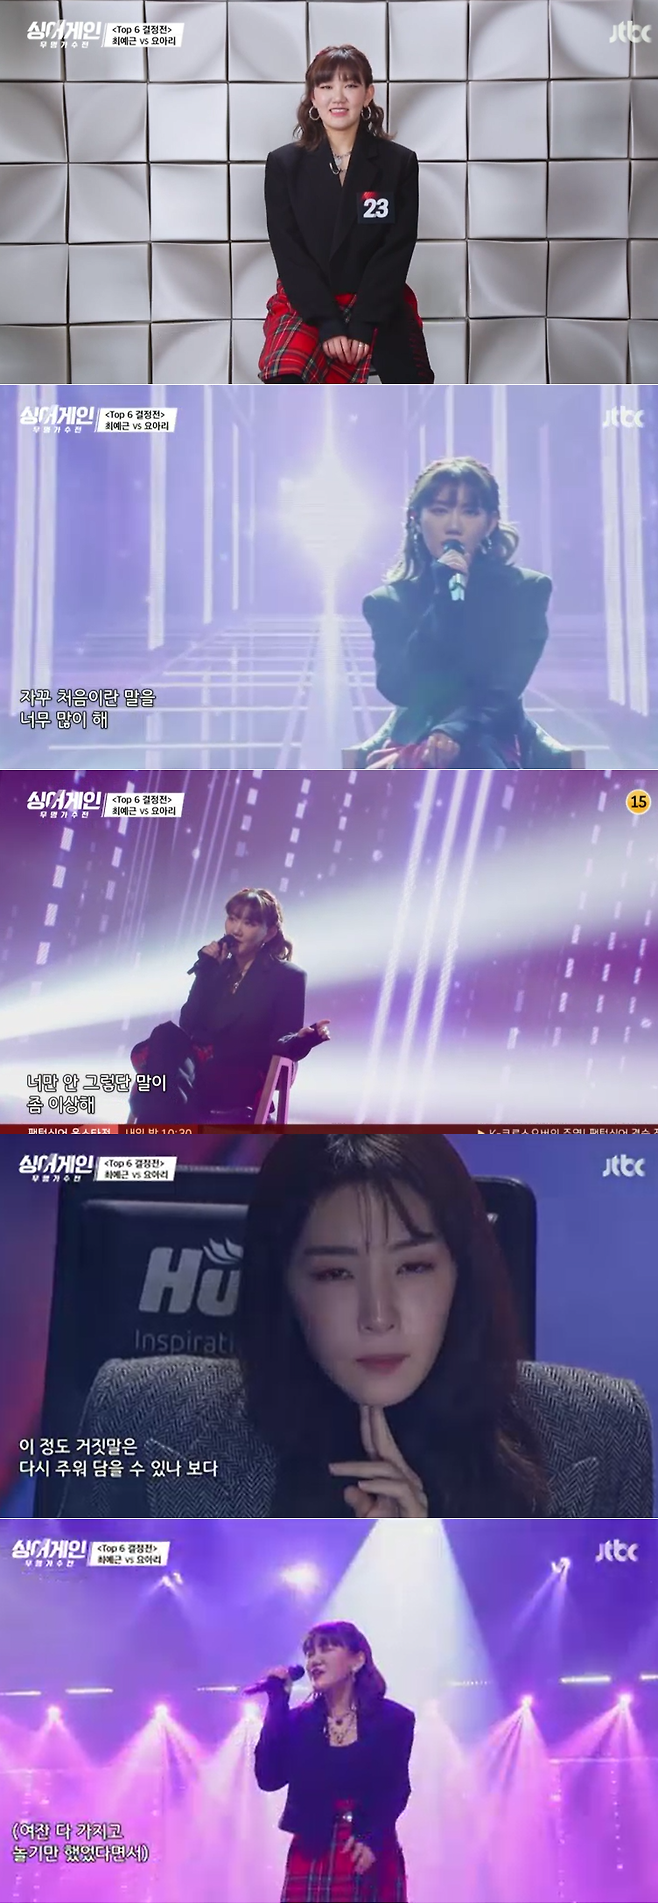 JTBC 방송화면 캡처